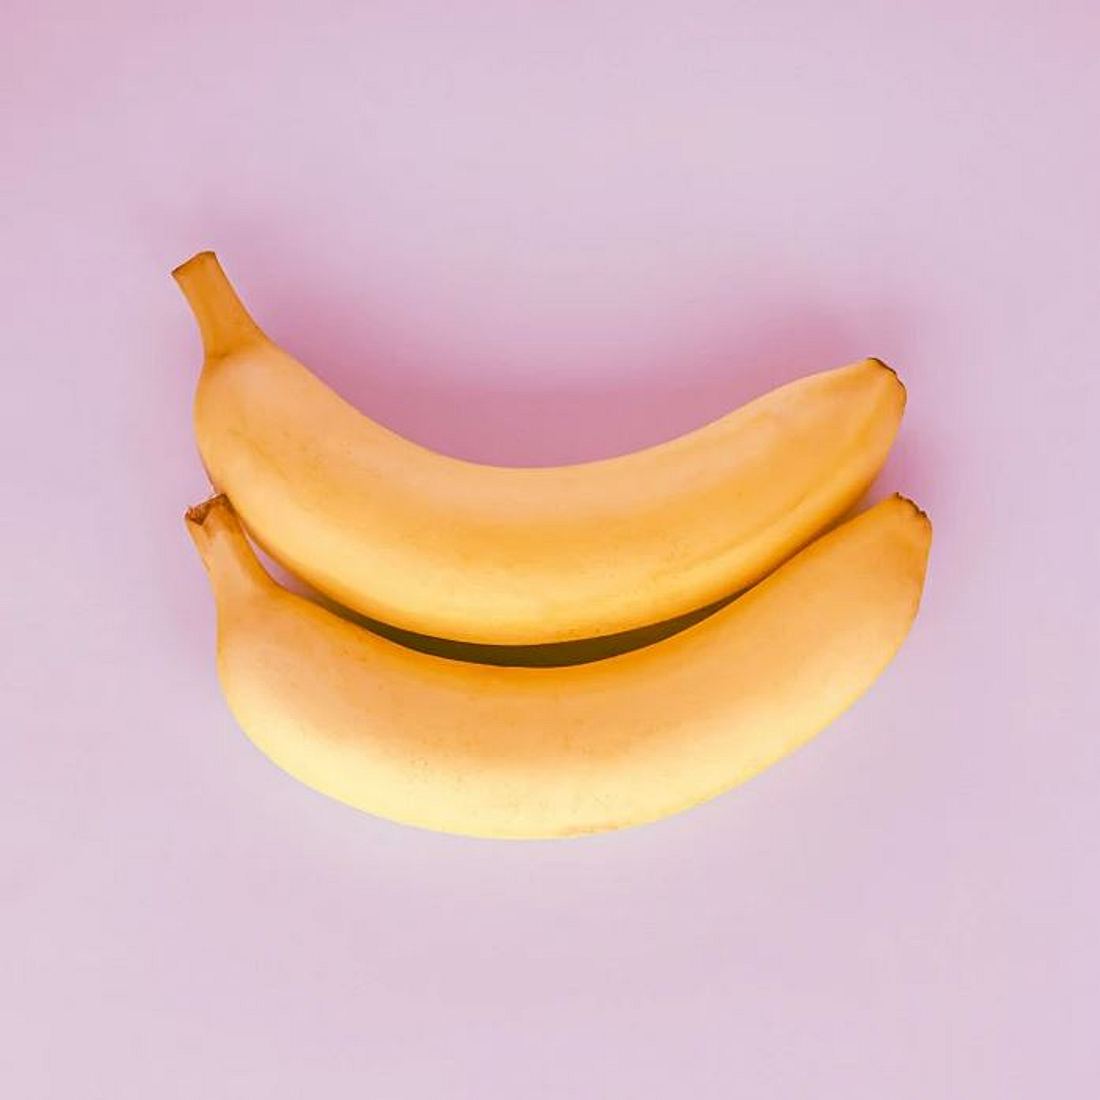 Einhorn Sexstellung durch Bananen symbolisiert 